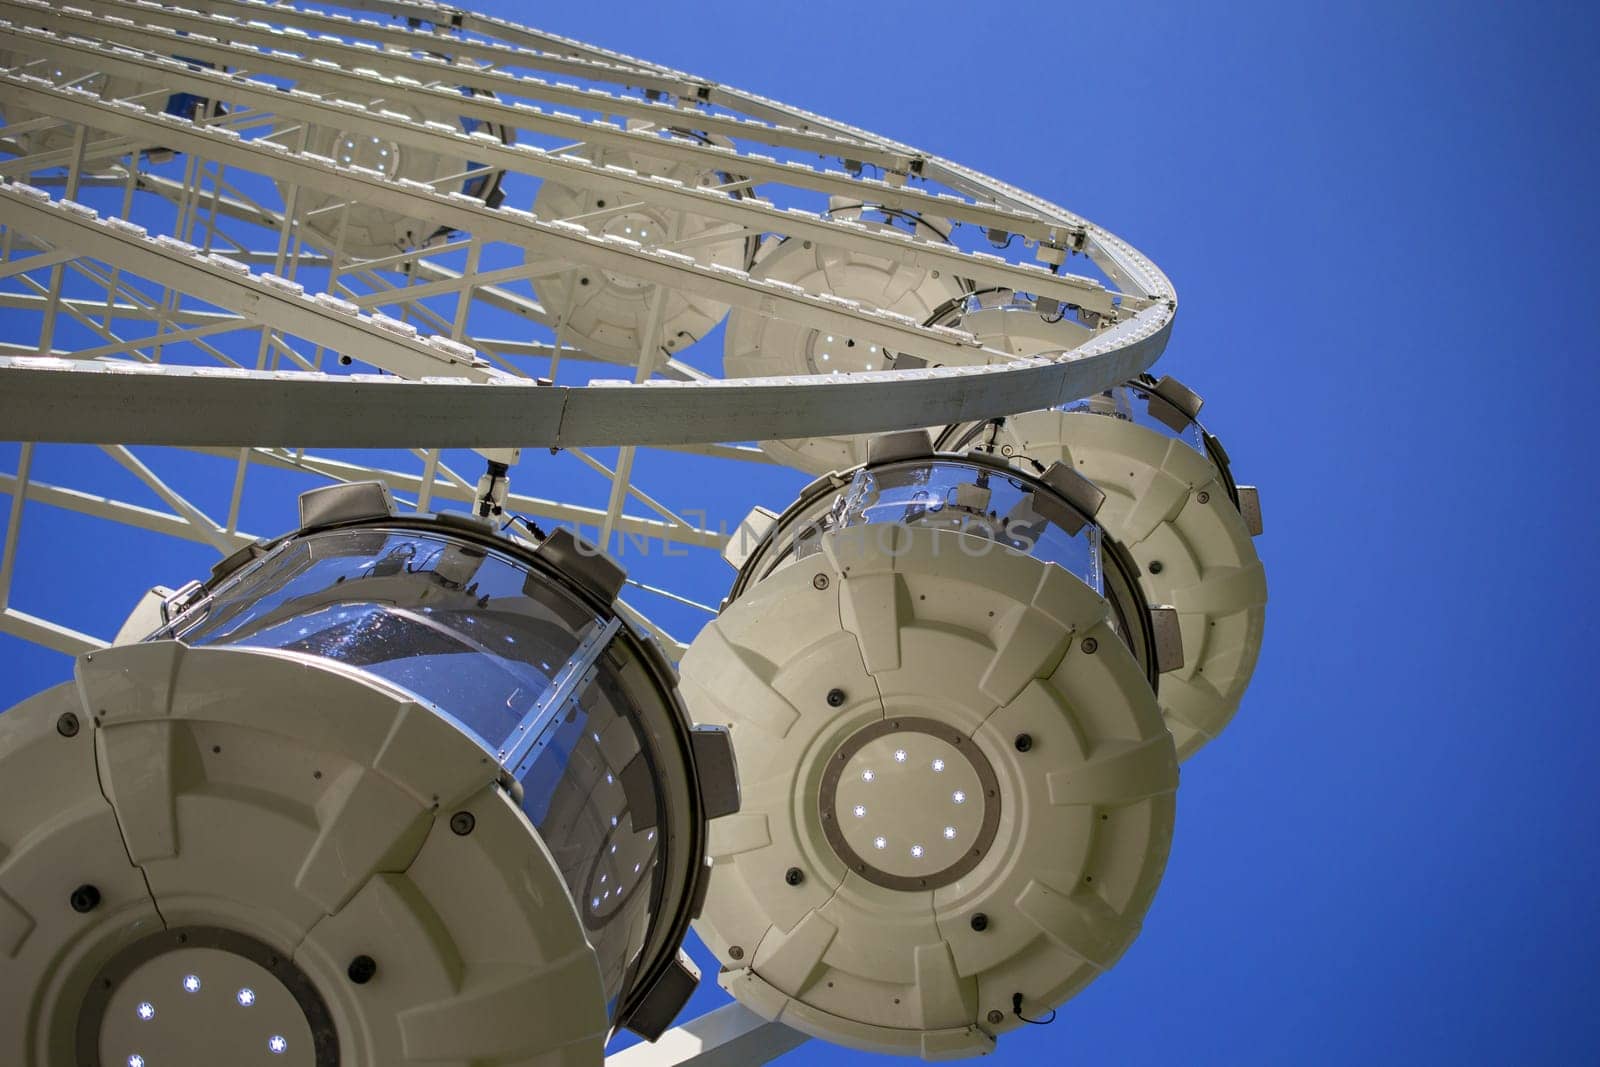 Ferris Wheel Over Blue Sky by Maksym